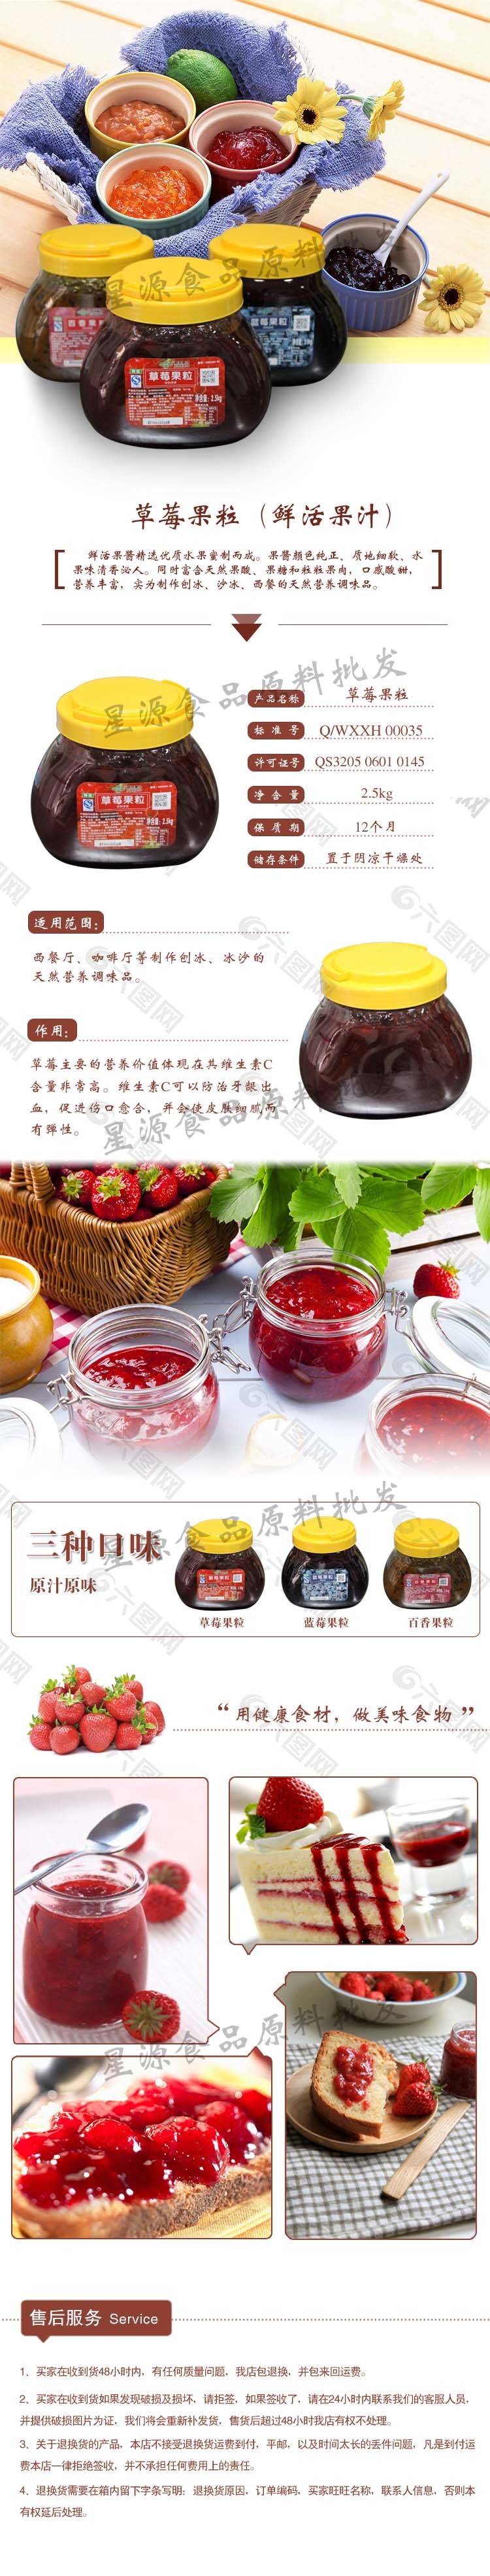 淘宝内页设计草莓果粒鲜活果汁草莓果汁